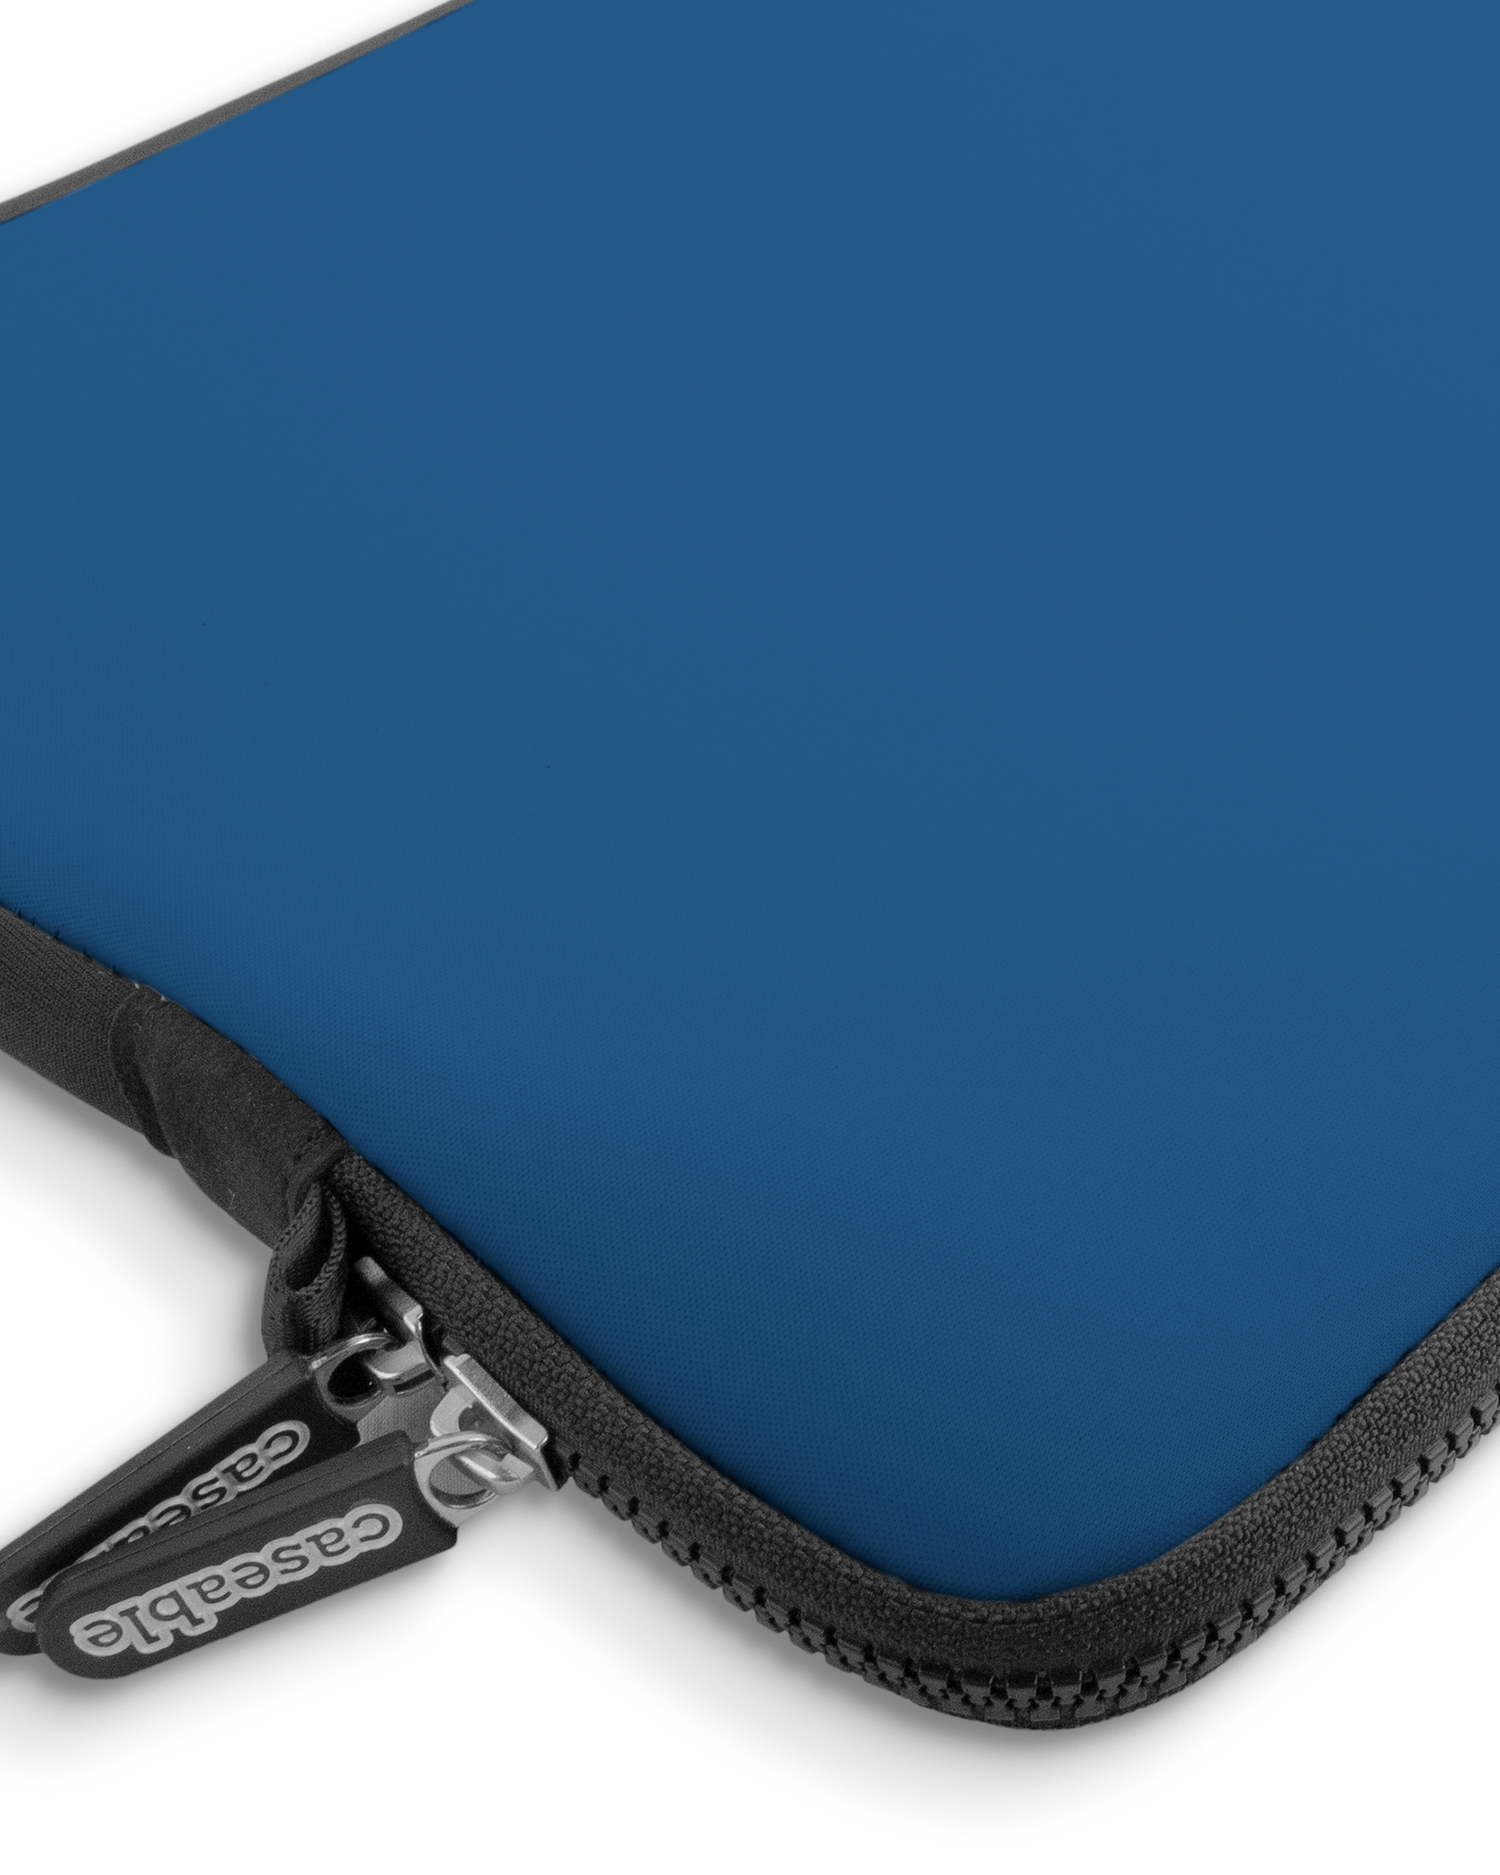 CLASSIC BLUE Premium Laptoptasche 13-14 Zoll mit Gerät im Inneren